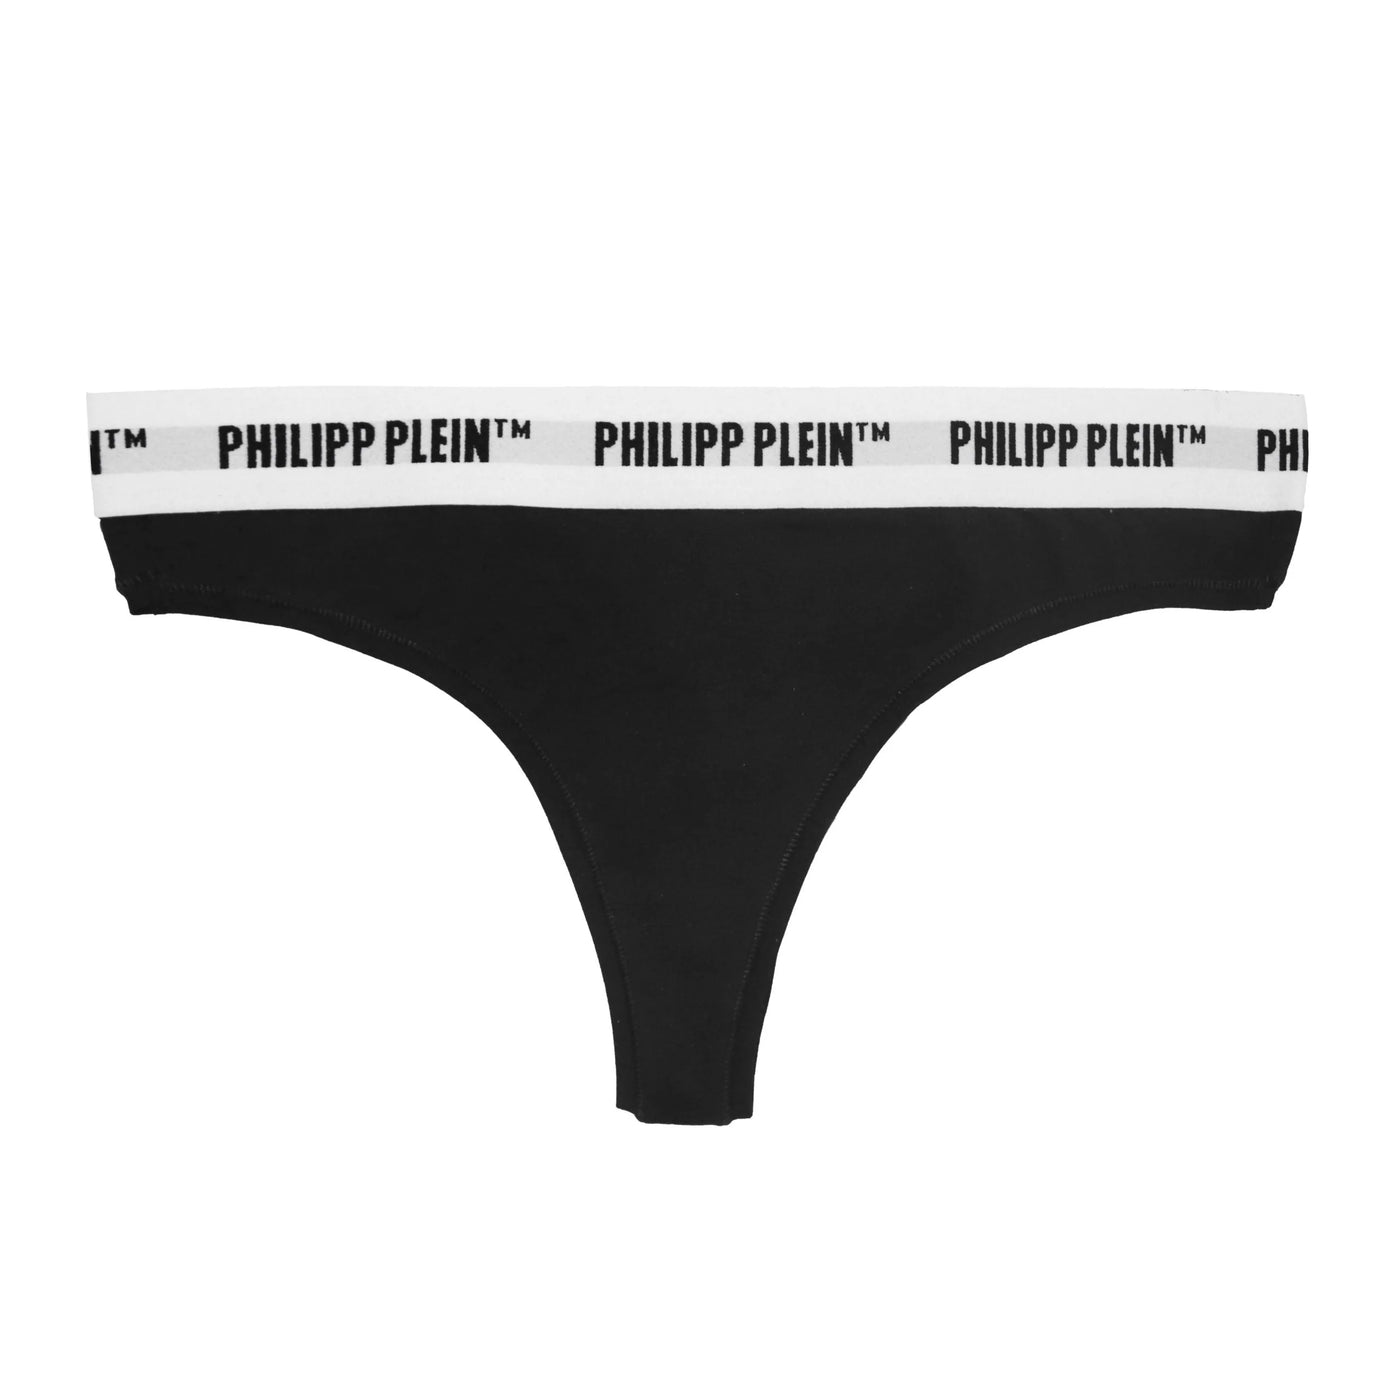 Philipp Plein  Underwear Black, feed-agegroup-adult, feed-color-Black, feed-gender-female, L, M, Philipp Plein, S, Underwear - Women - Clothing, XL at SEYMAYKA